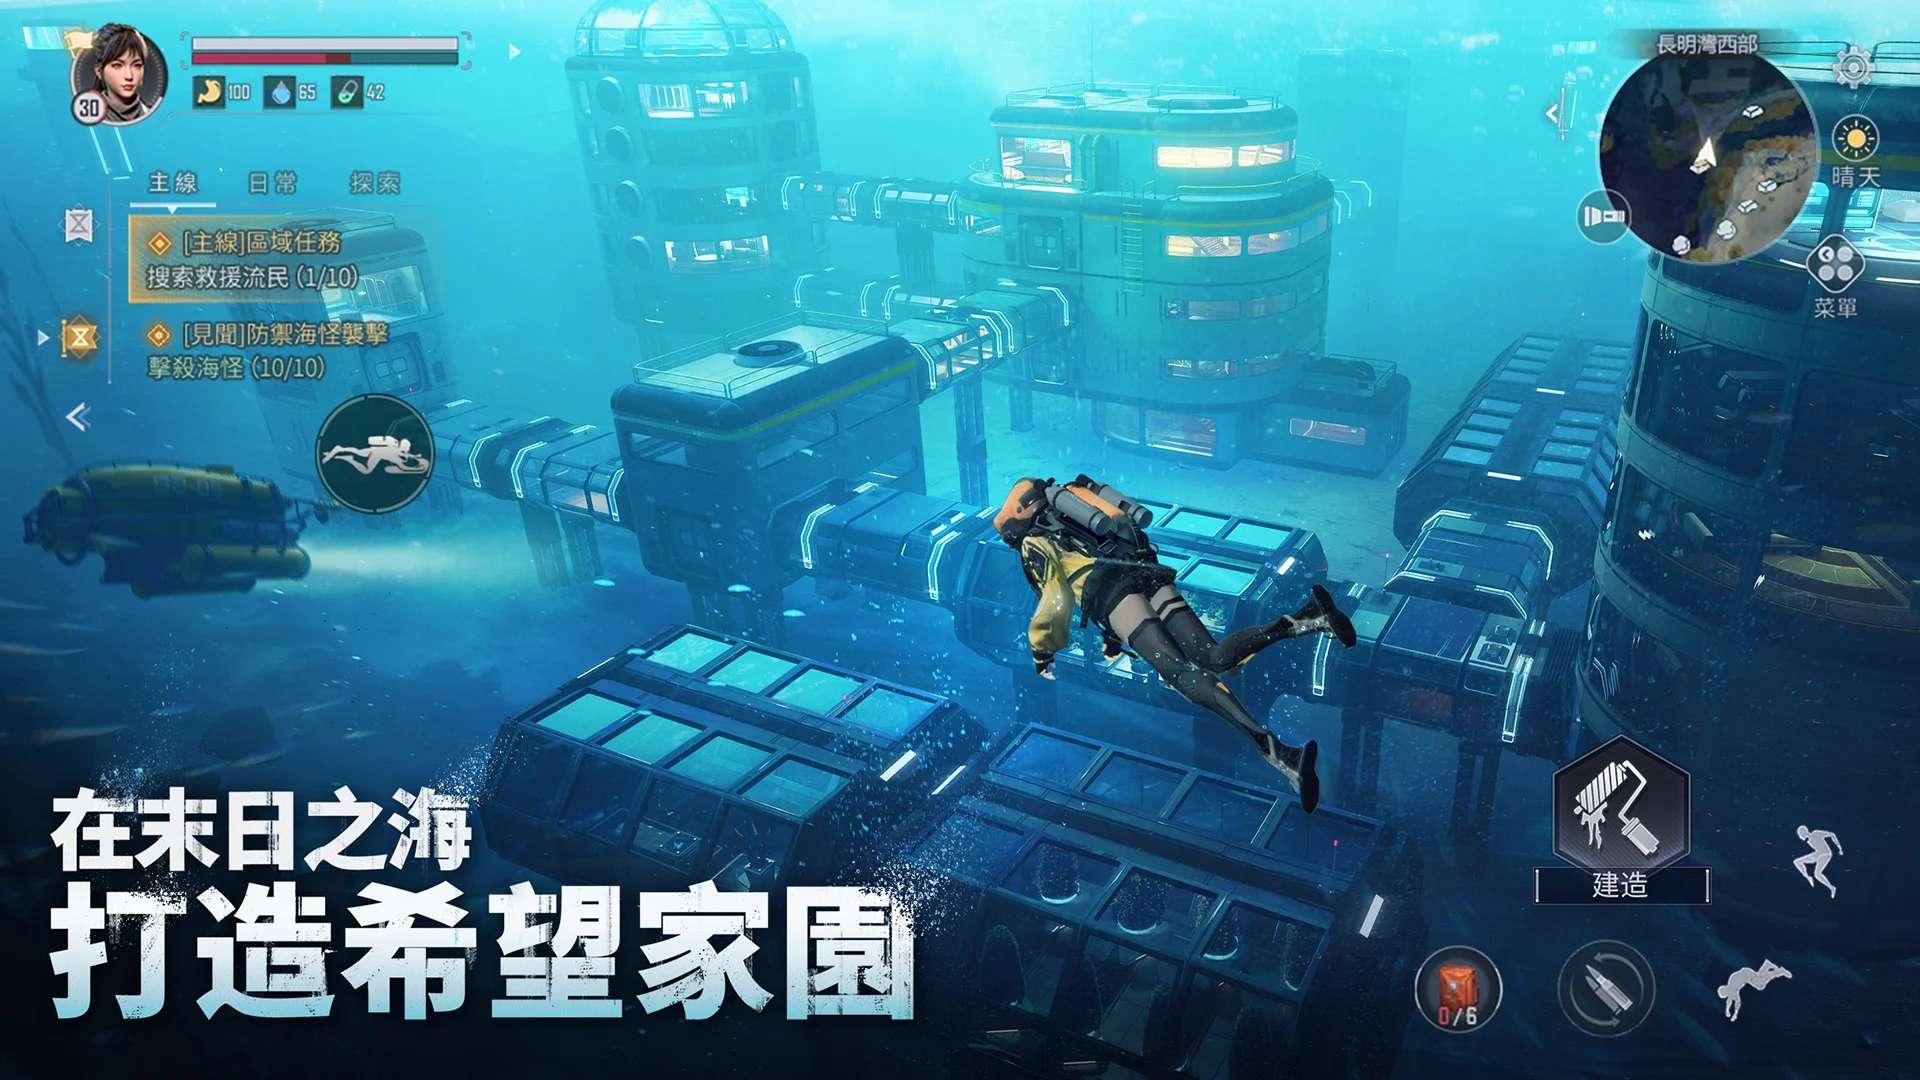 Mystic Abyss Lost Sea Area - Game sinh tồn dưới đáy biển của NetEase mở rộng phát hành